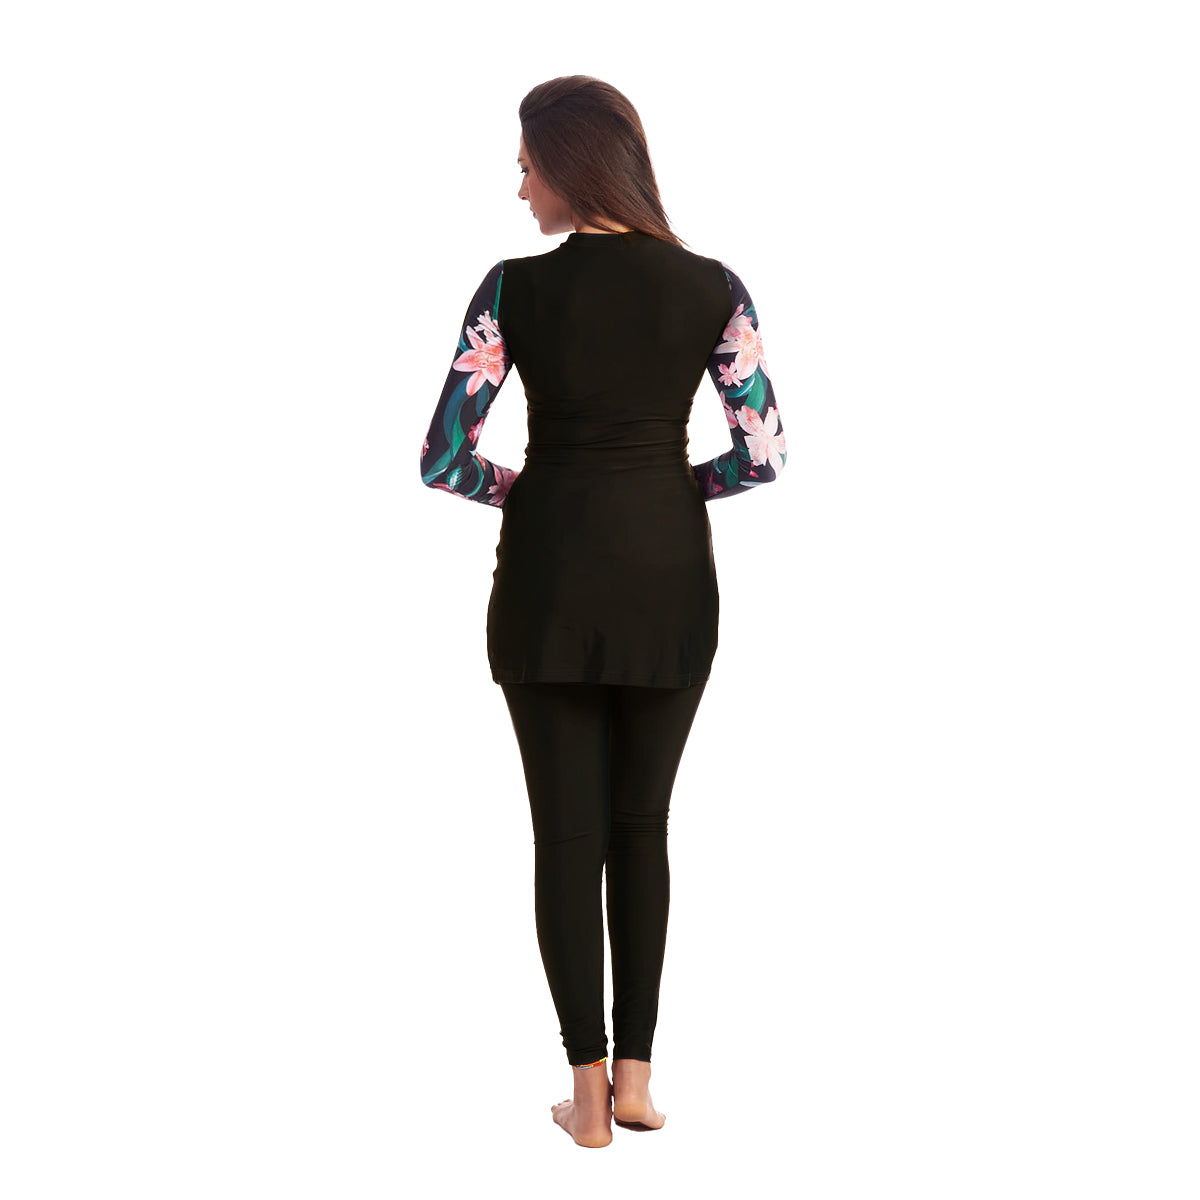 Energetics Burkini Full Covered Swimsuit For Women + Bonnet, Black